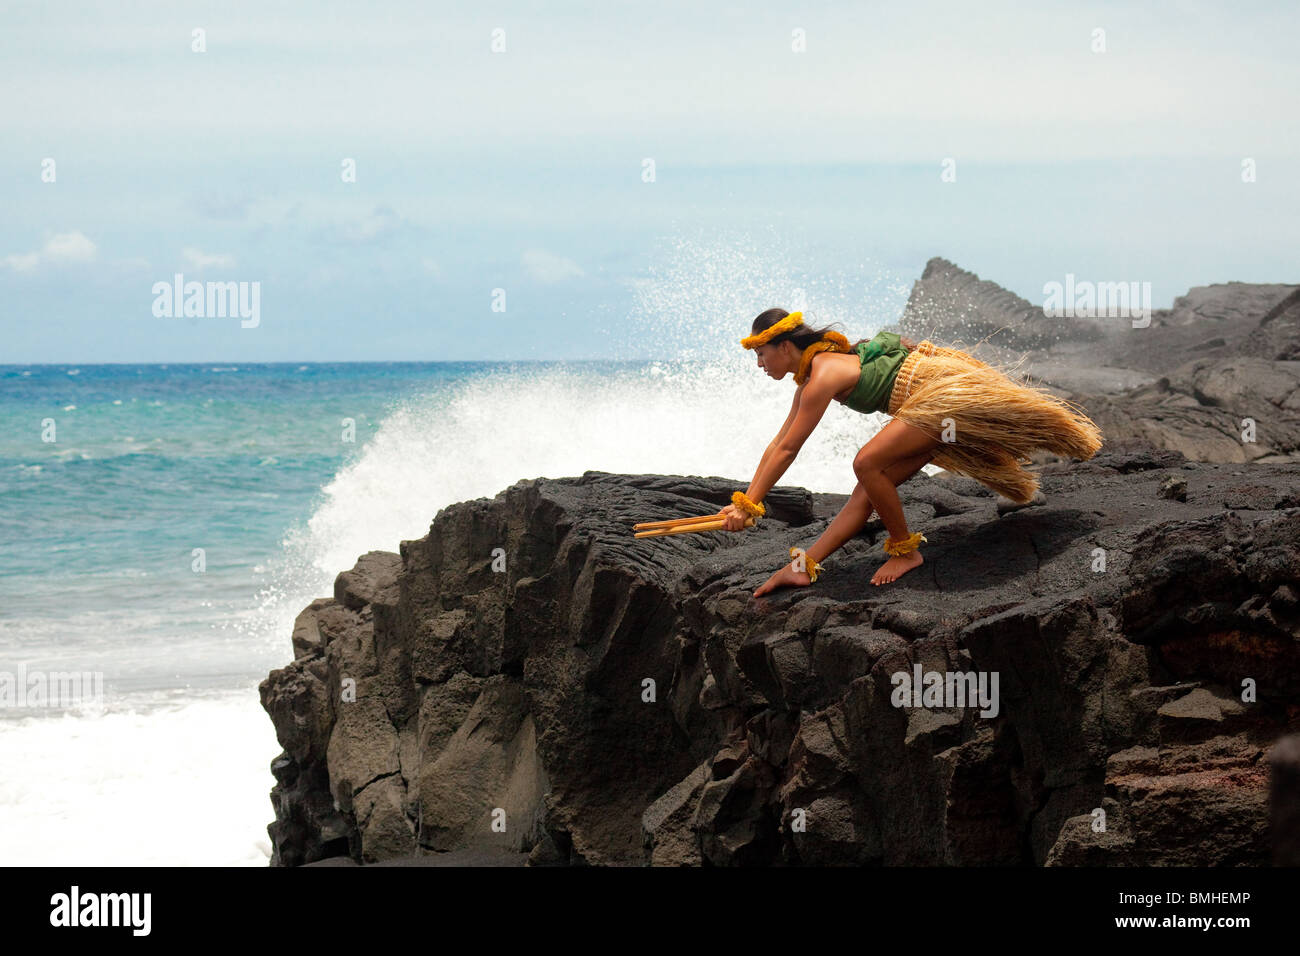 Danseuse de hula hawaïenne femelle Banque D'Images